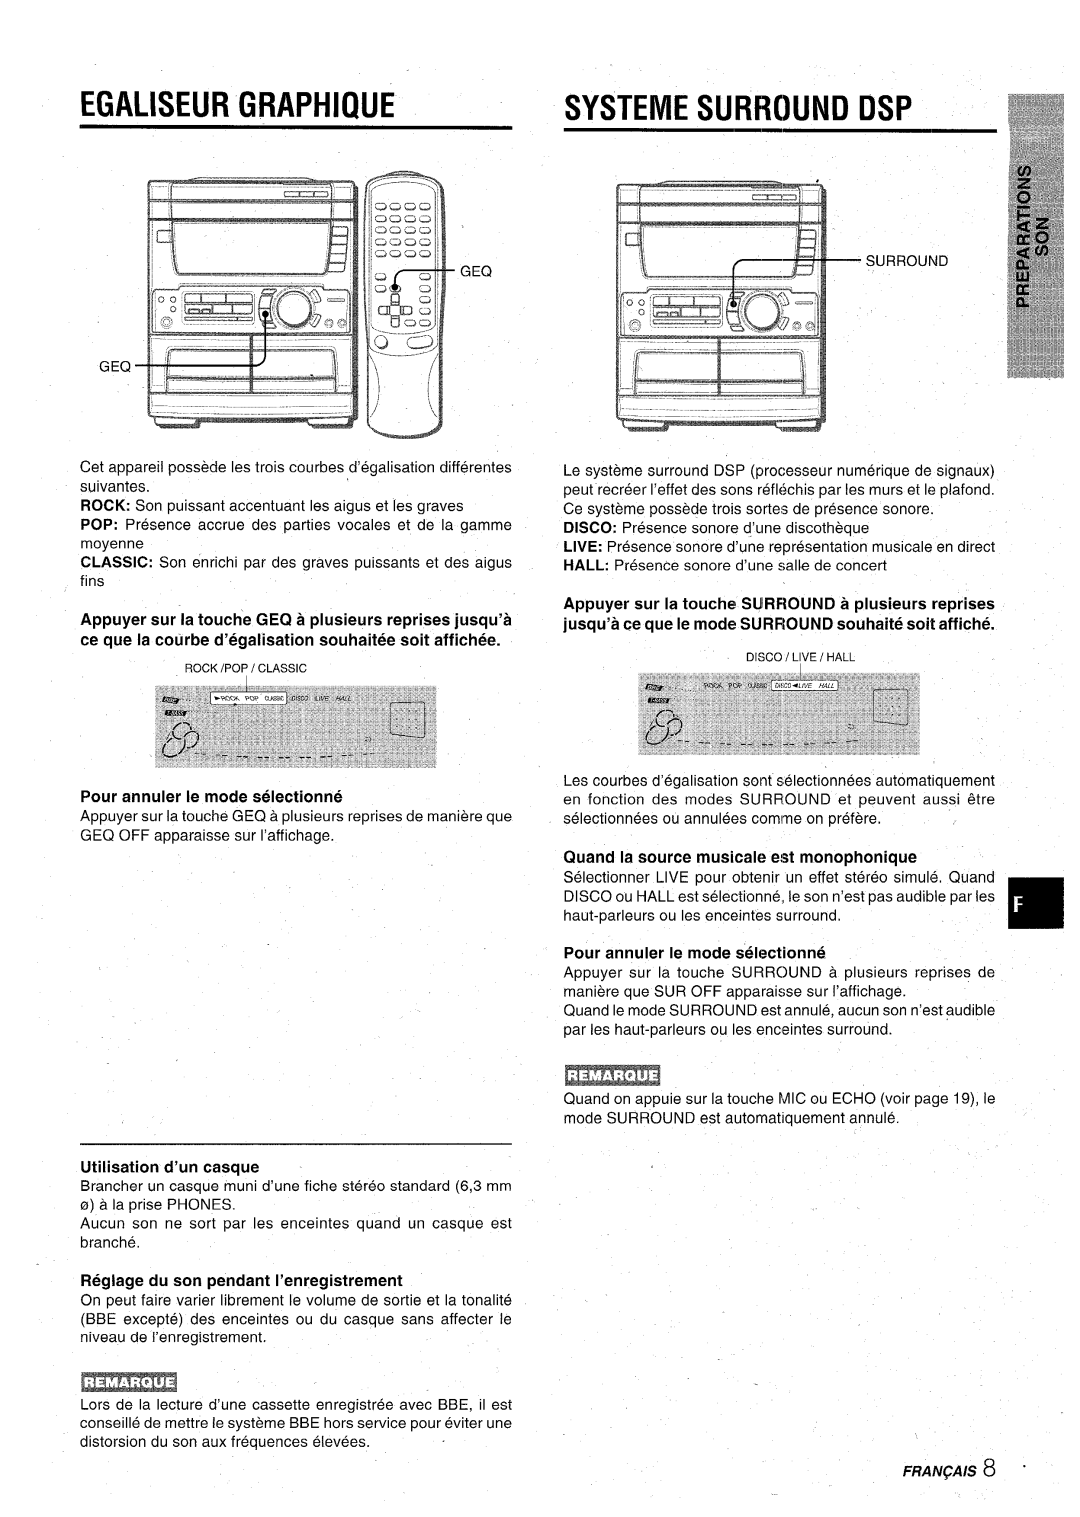 Aiwa CX-NA71 manual Egaliseur Graphique, SYSTEME SURROUND DSP E ‘uRROuND, Pour annuler Ie mode selectionne, Fran~Ais 